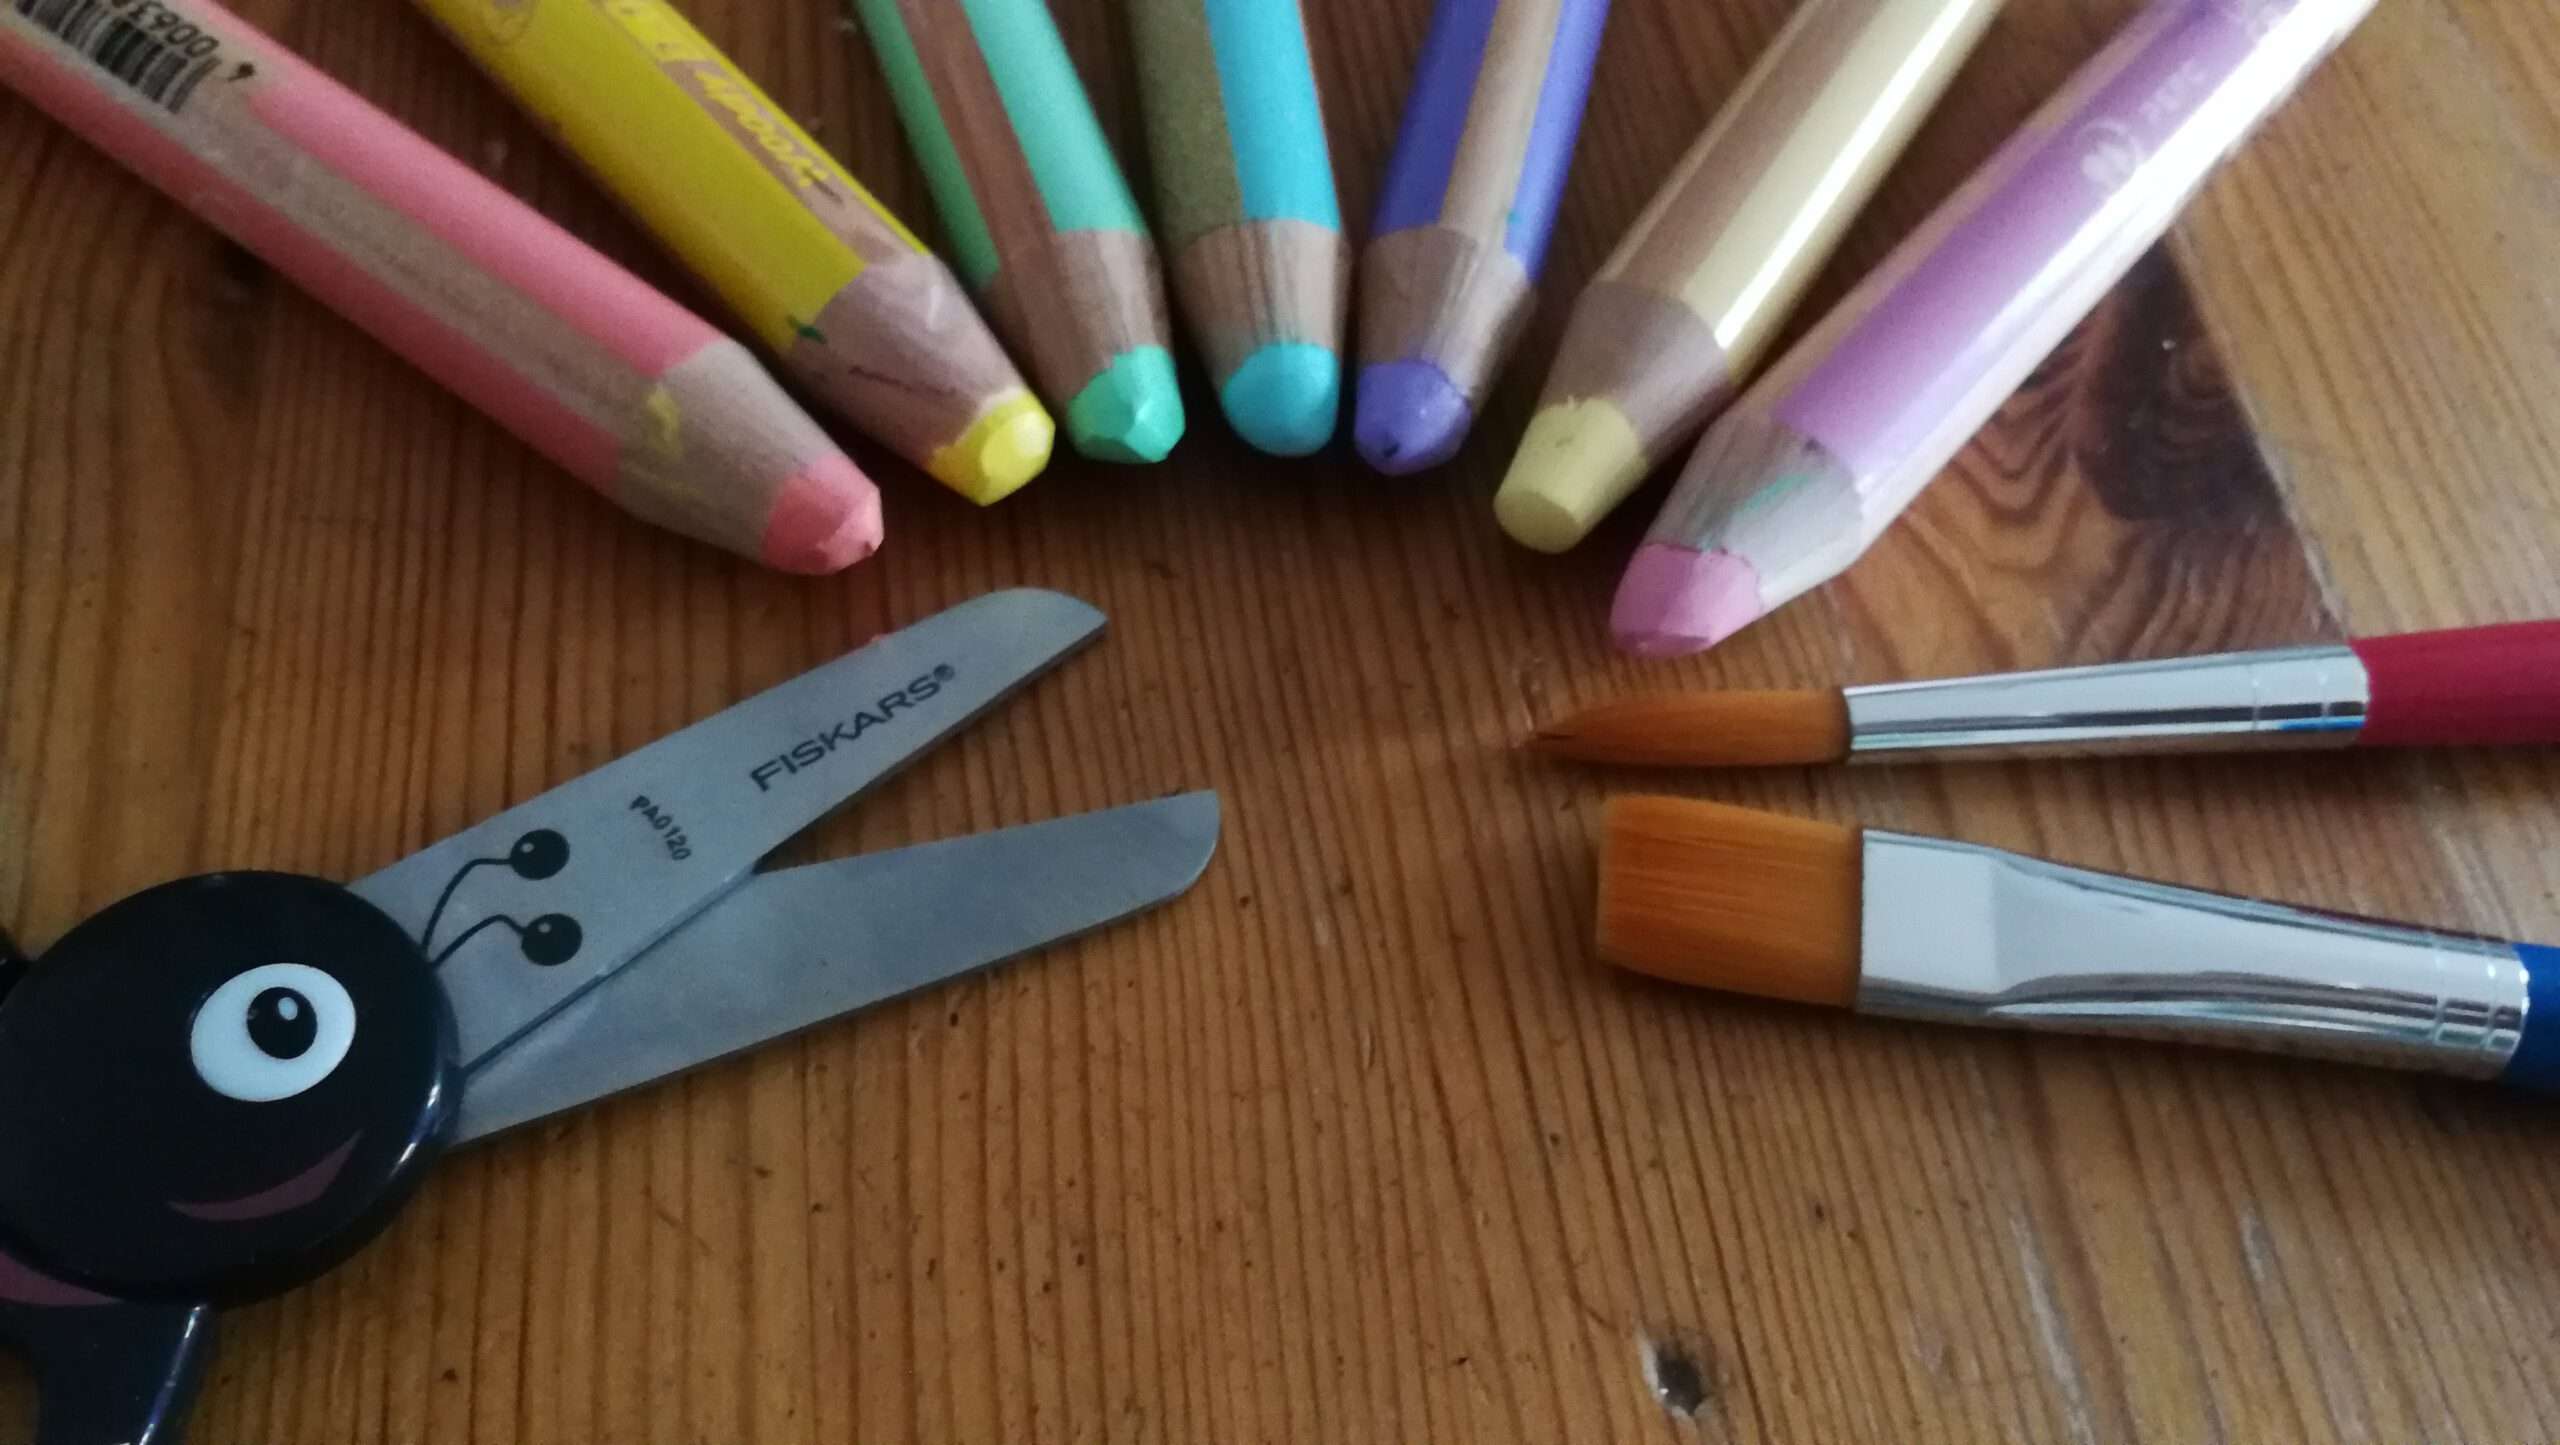 Im Halbkreis gelegt: Schere, Sieben bunte Stifte, zwei Pnsel